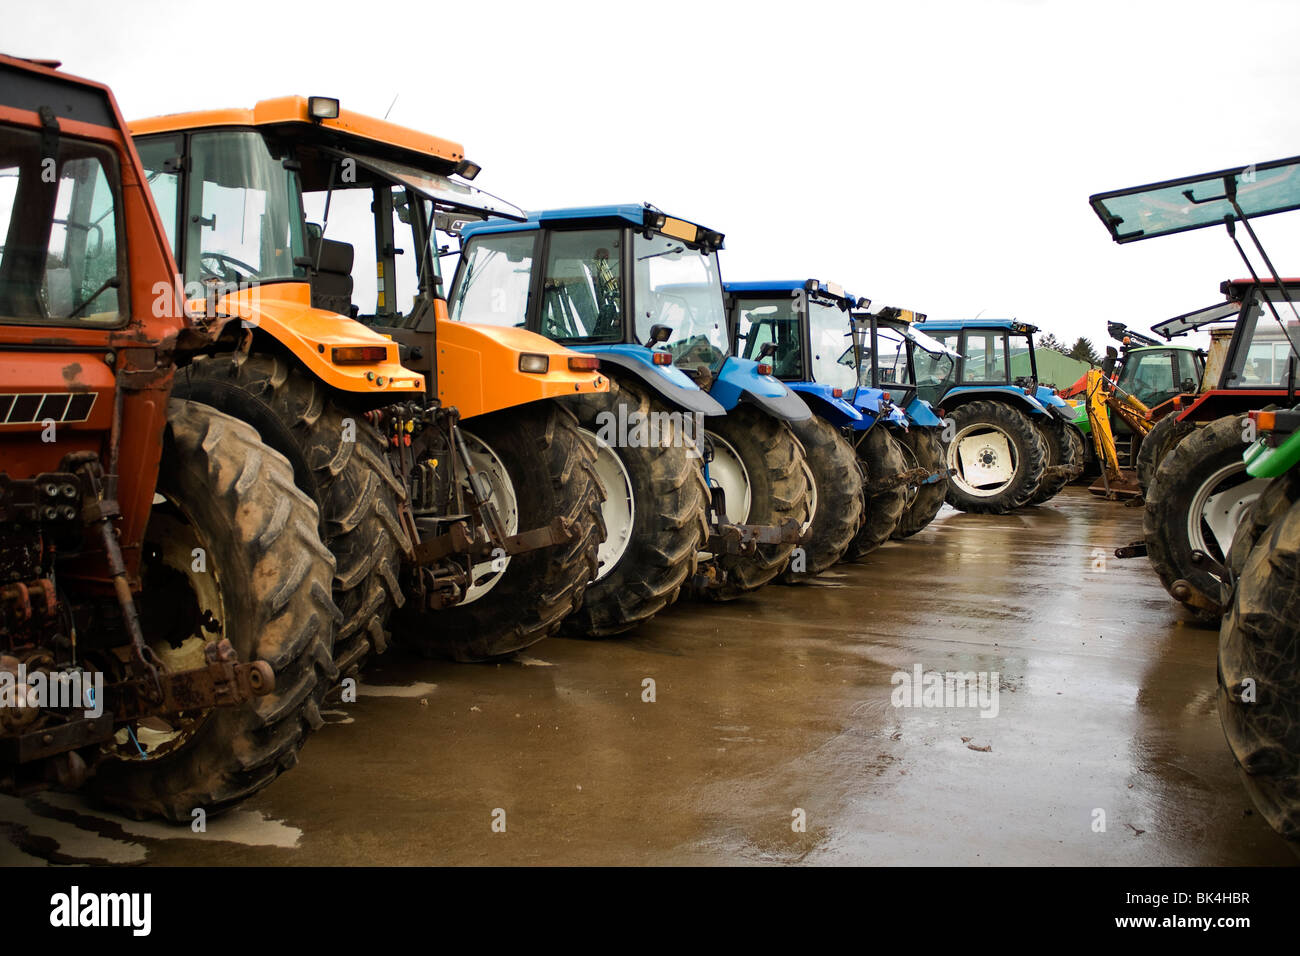 Traktoren und Landmaschinen bei einer Auktion Stockfotografie - Alamy